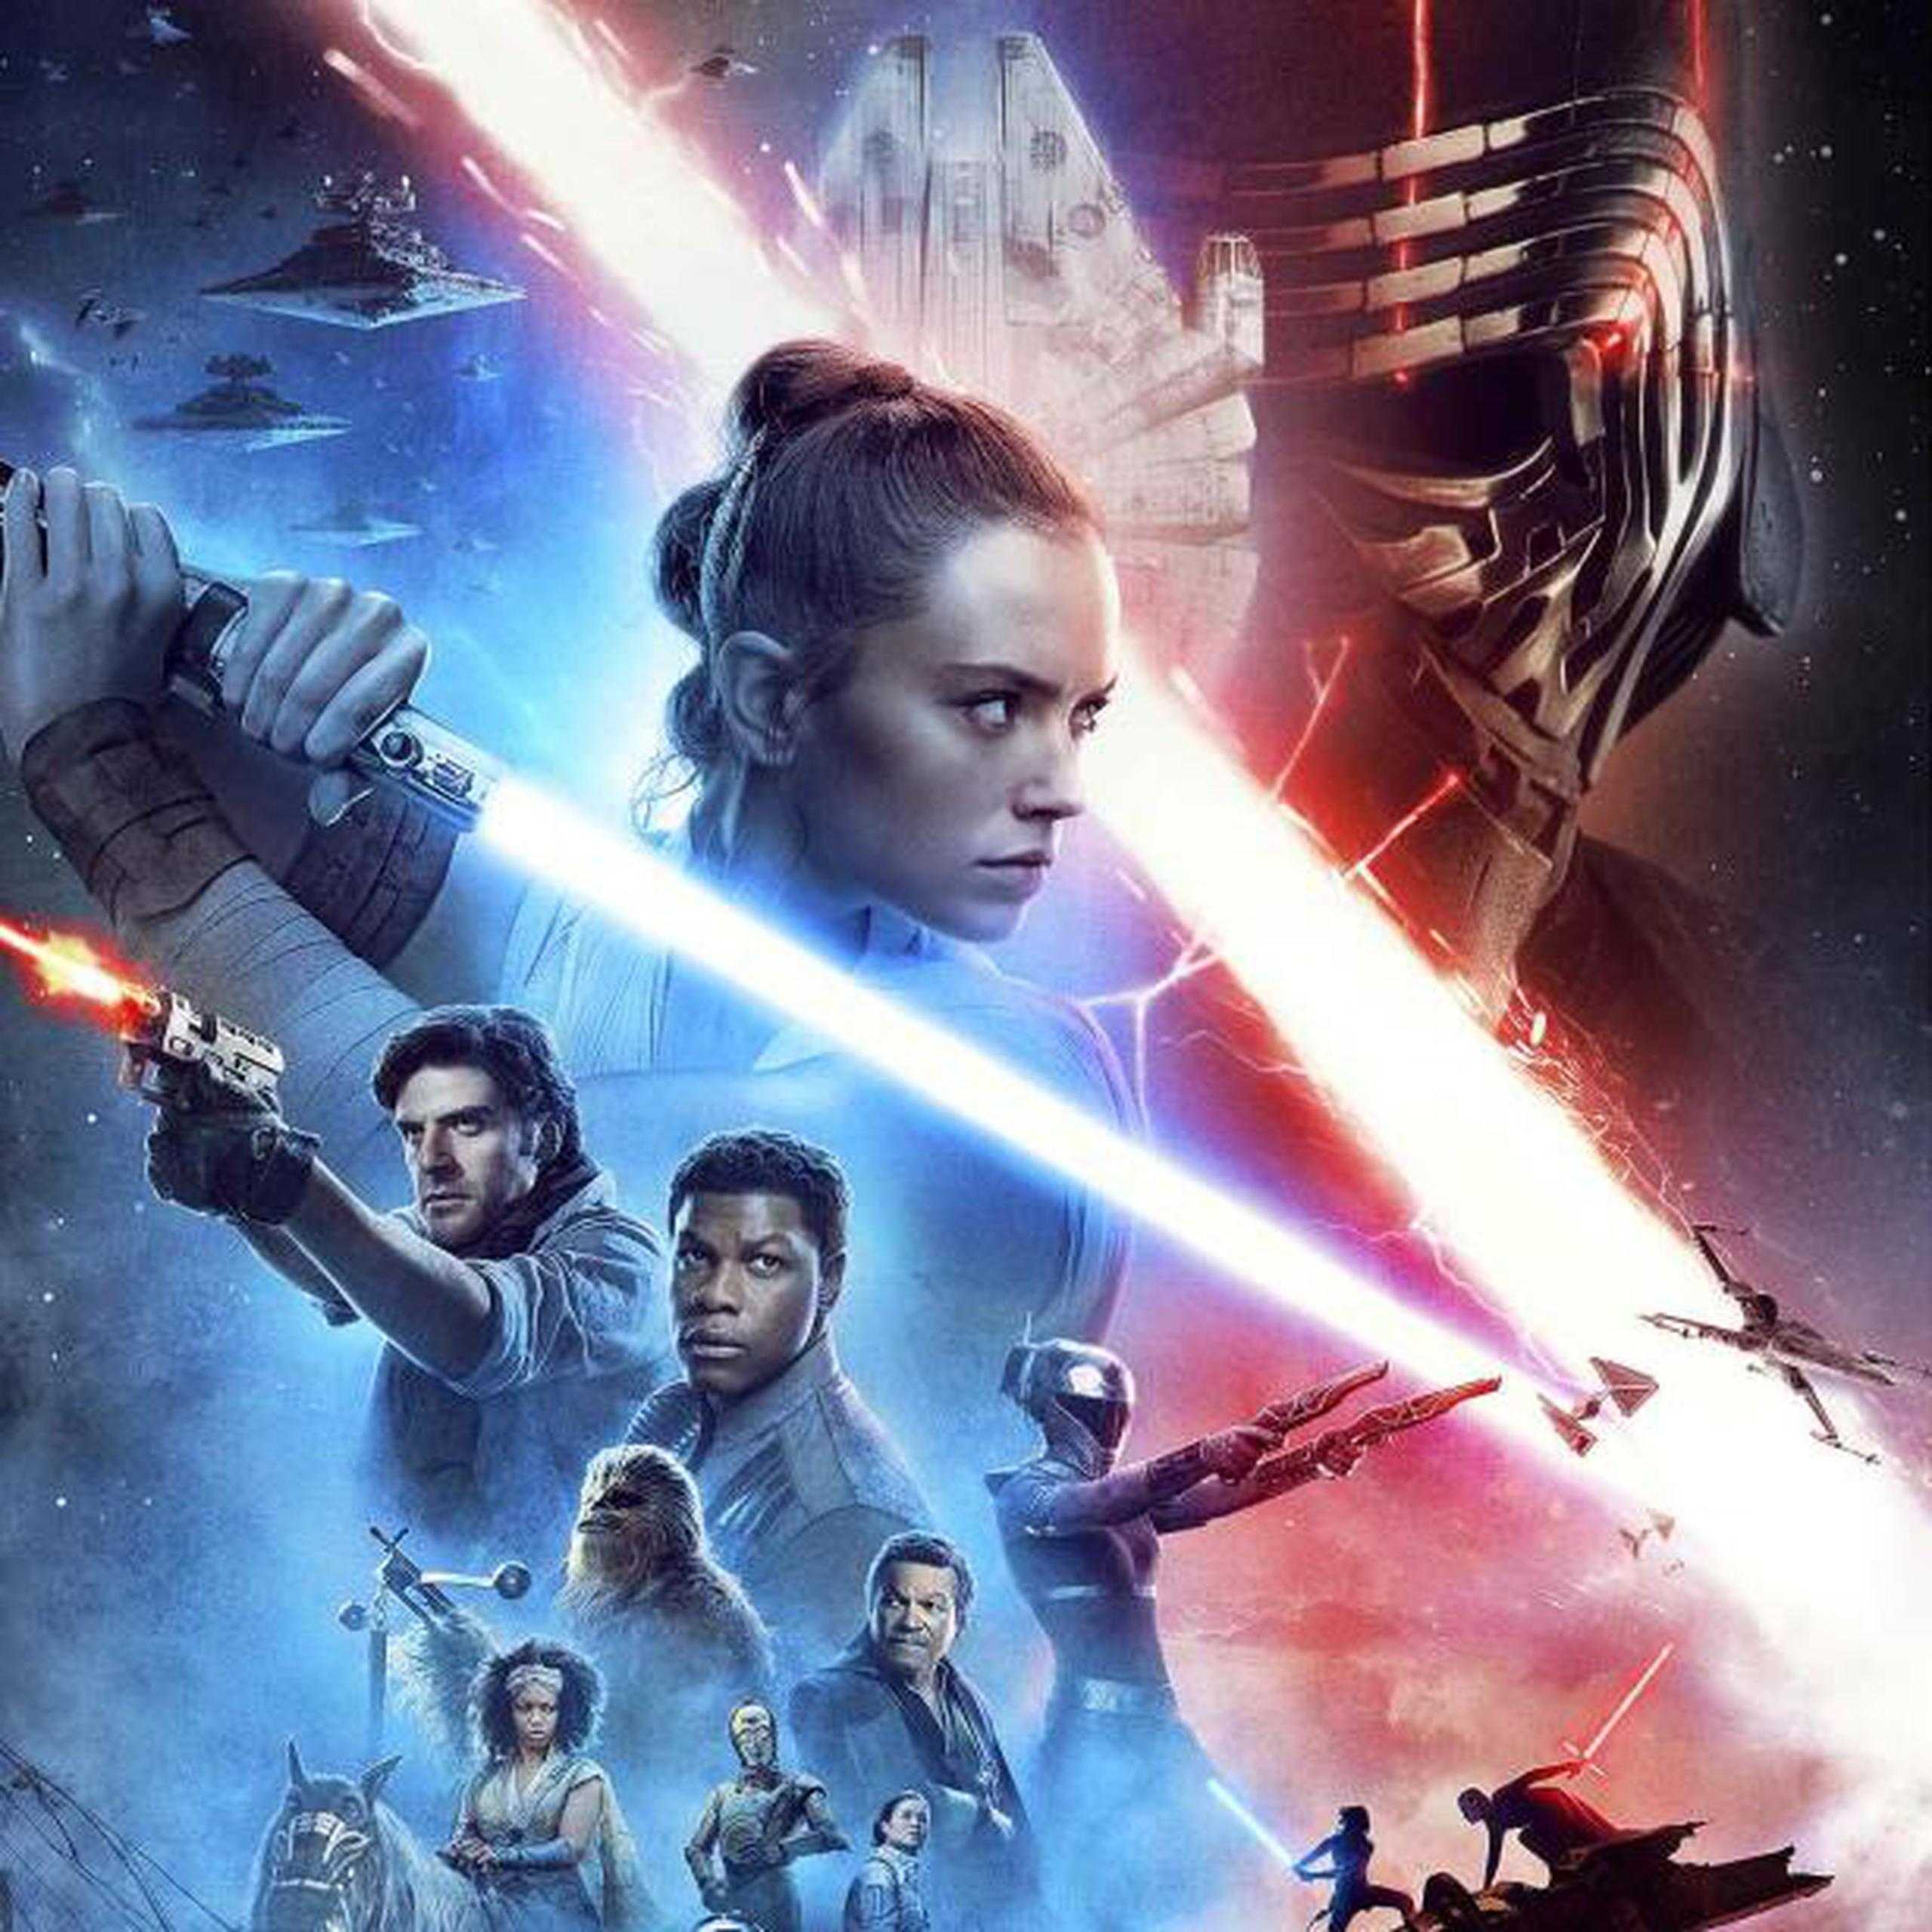 El 20 de diciembre se estrenará "Star Wars: Episode IX - The Rise of Skywalker", que pondrá fin a la tercera trilogía de la saga. (Lucasfilm / Disney)